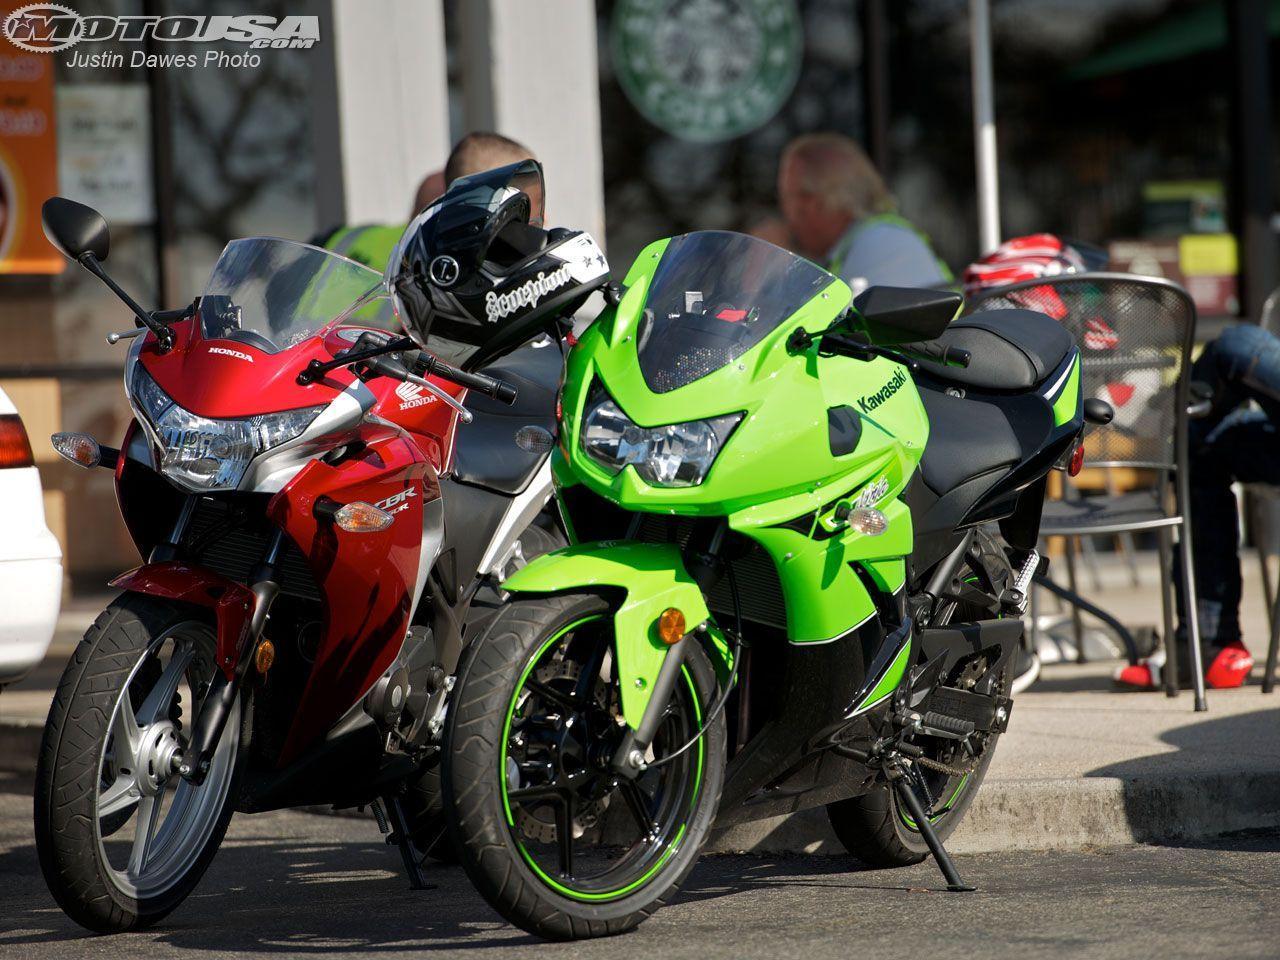 Kawasaki Ninja 250R Comparison Photo